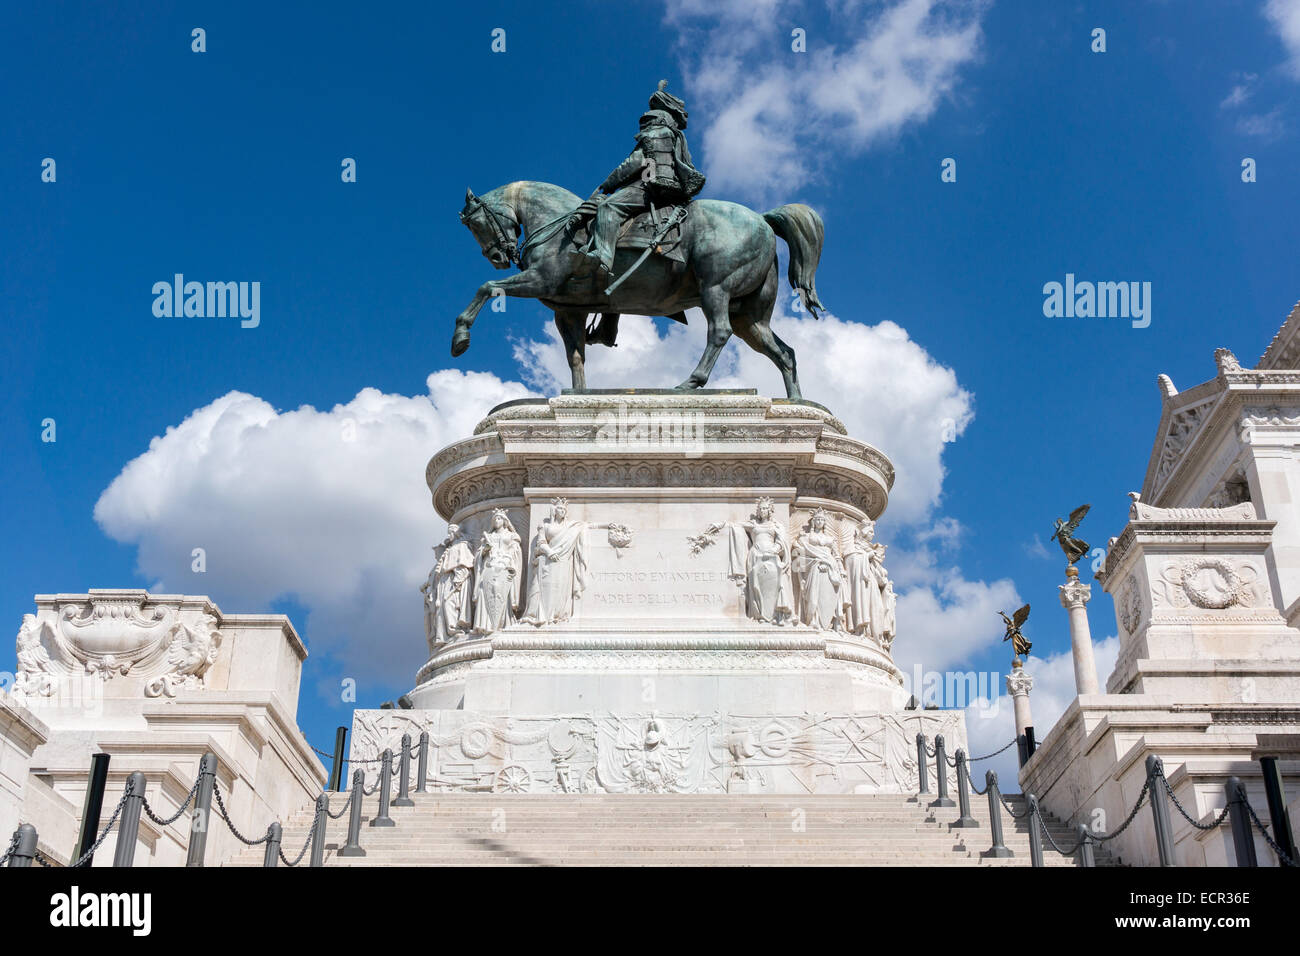 Italy: Altare della Patria (Il Vittoriano) in Rome. Photo from 5th September 2014. Stock Photo